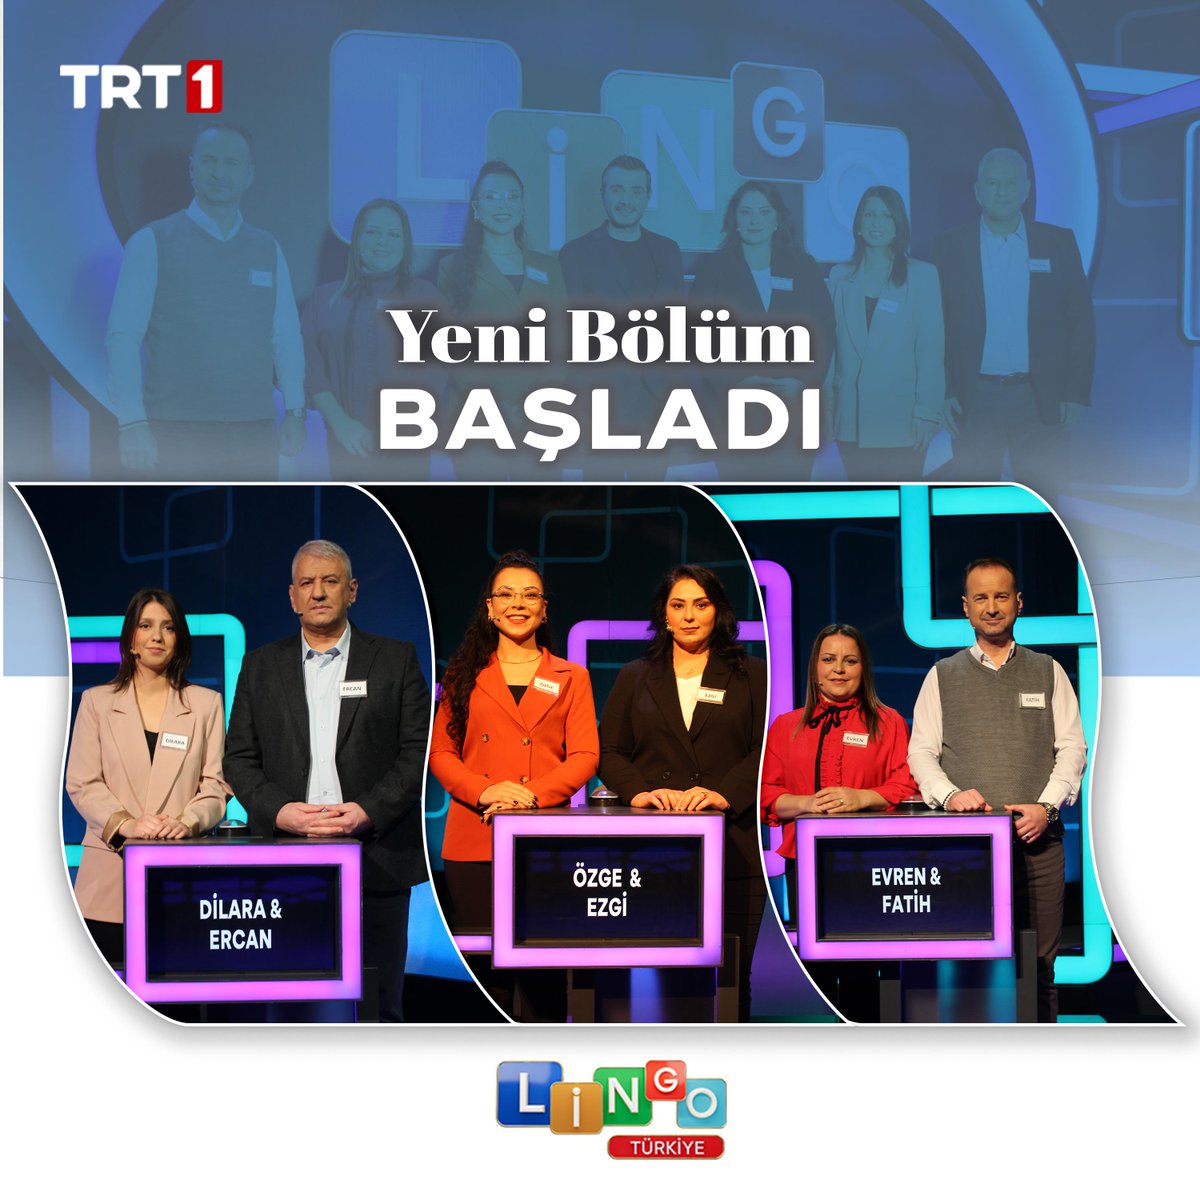 Yeni bölüm başladı. 🌸

#LingoTürkiye hafta içi her gün 17.45’te @trt1’de 📺